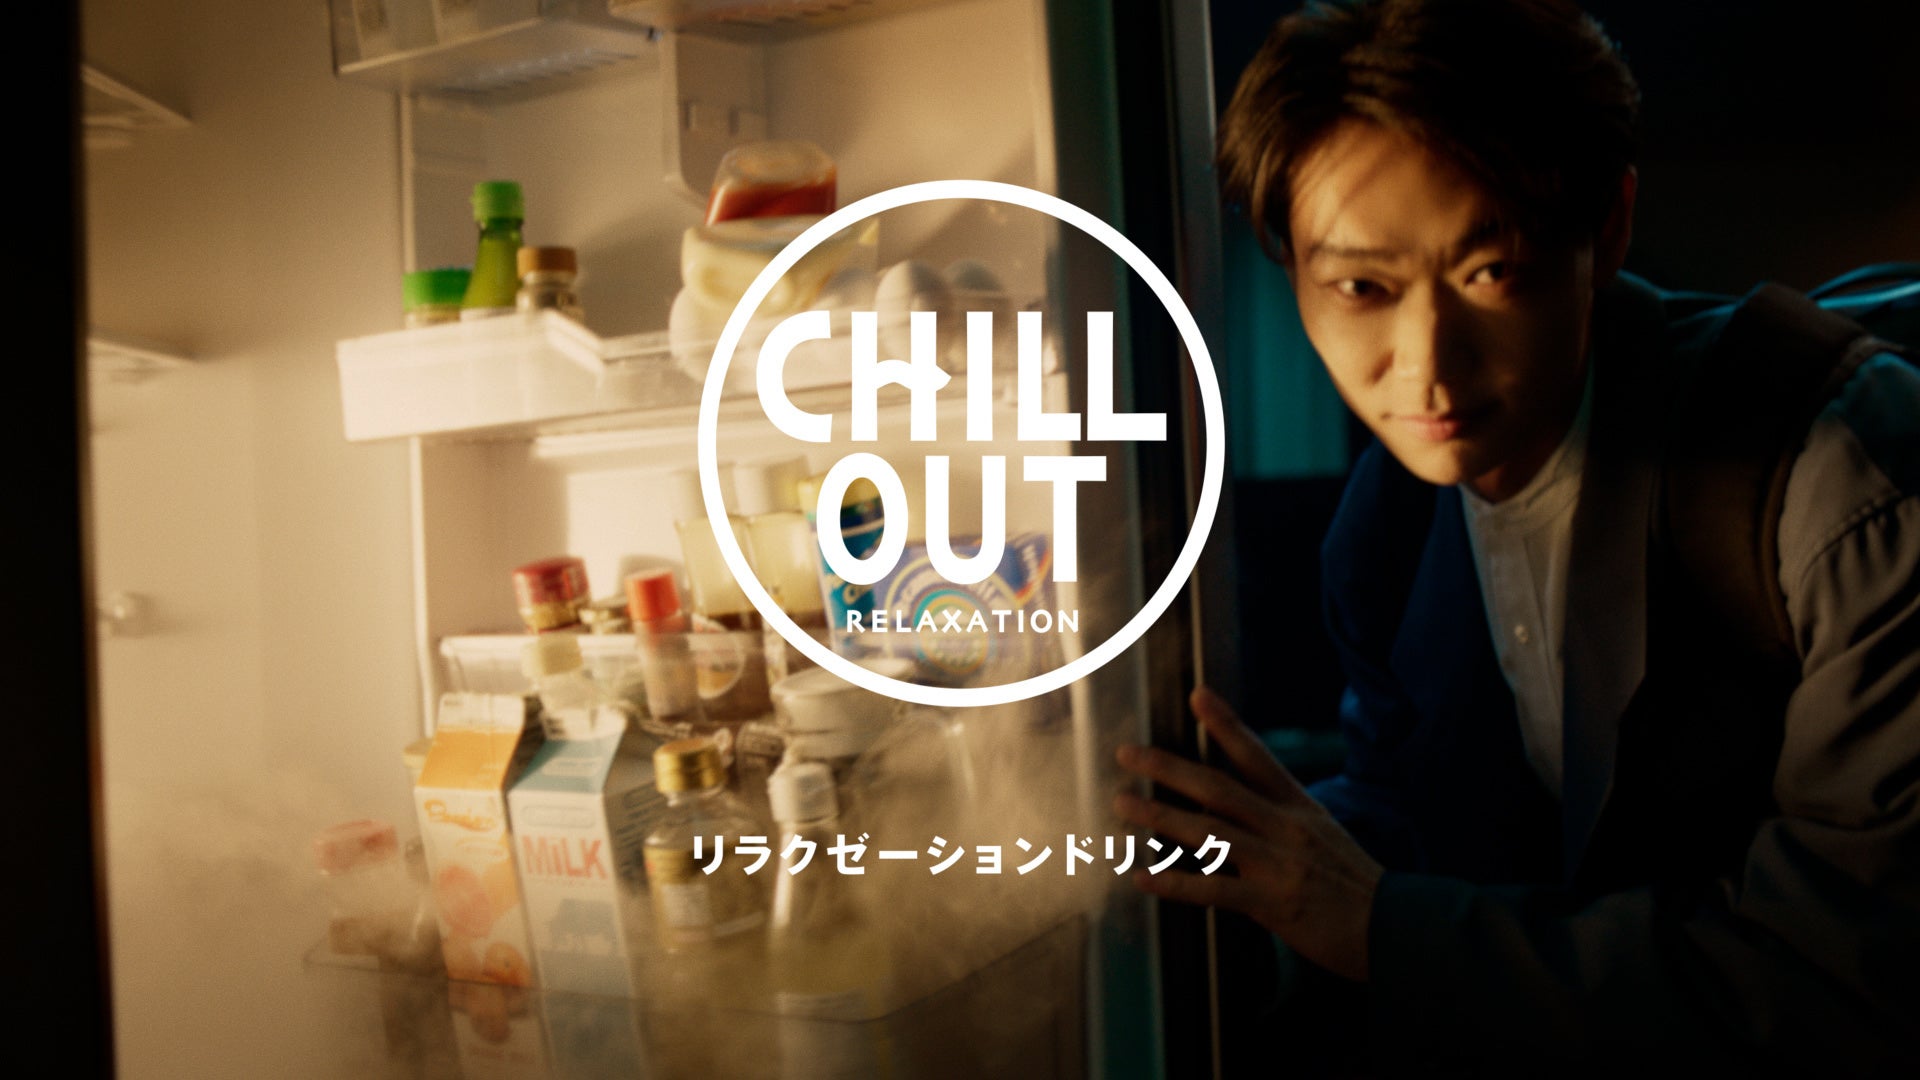 俳優・笠松将さんが、冷蔵庫の奥に広がる“チル”な世界に吸い込まれる！リラクゼーションドリンクCHILL OUT新CM「リラックスを、味わおう。」篇 2月27日(月)より放送